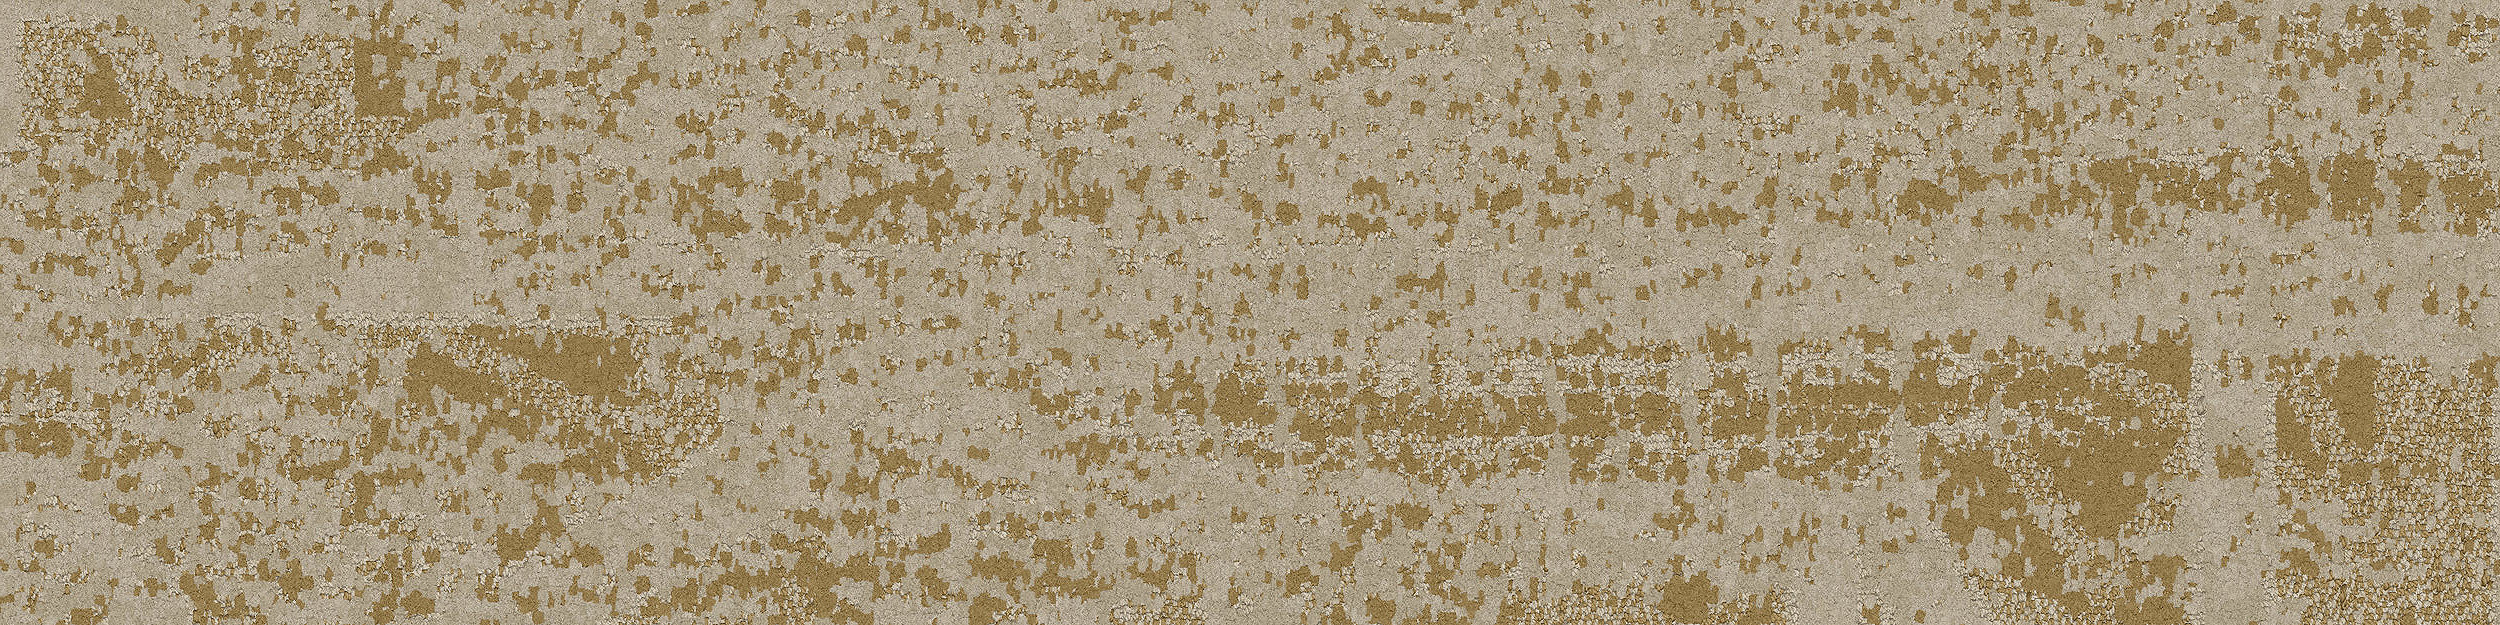 PM57 Carpet Tile in Goldenrod image number 5